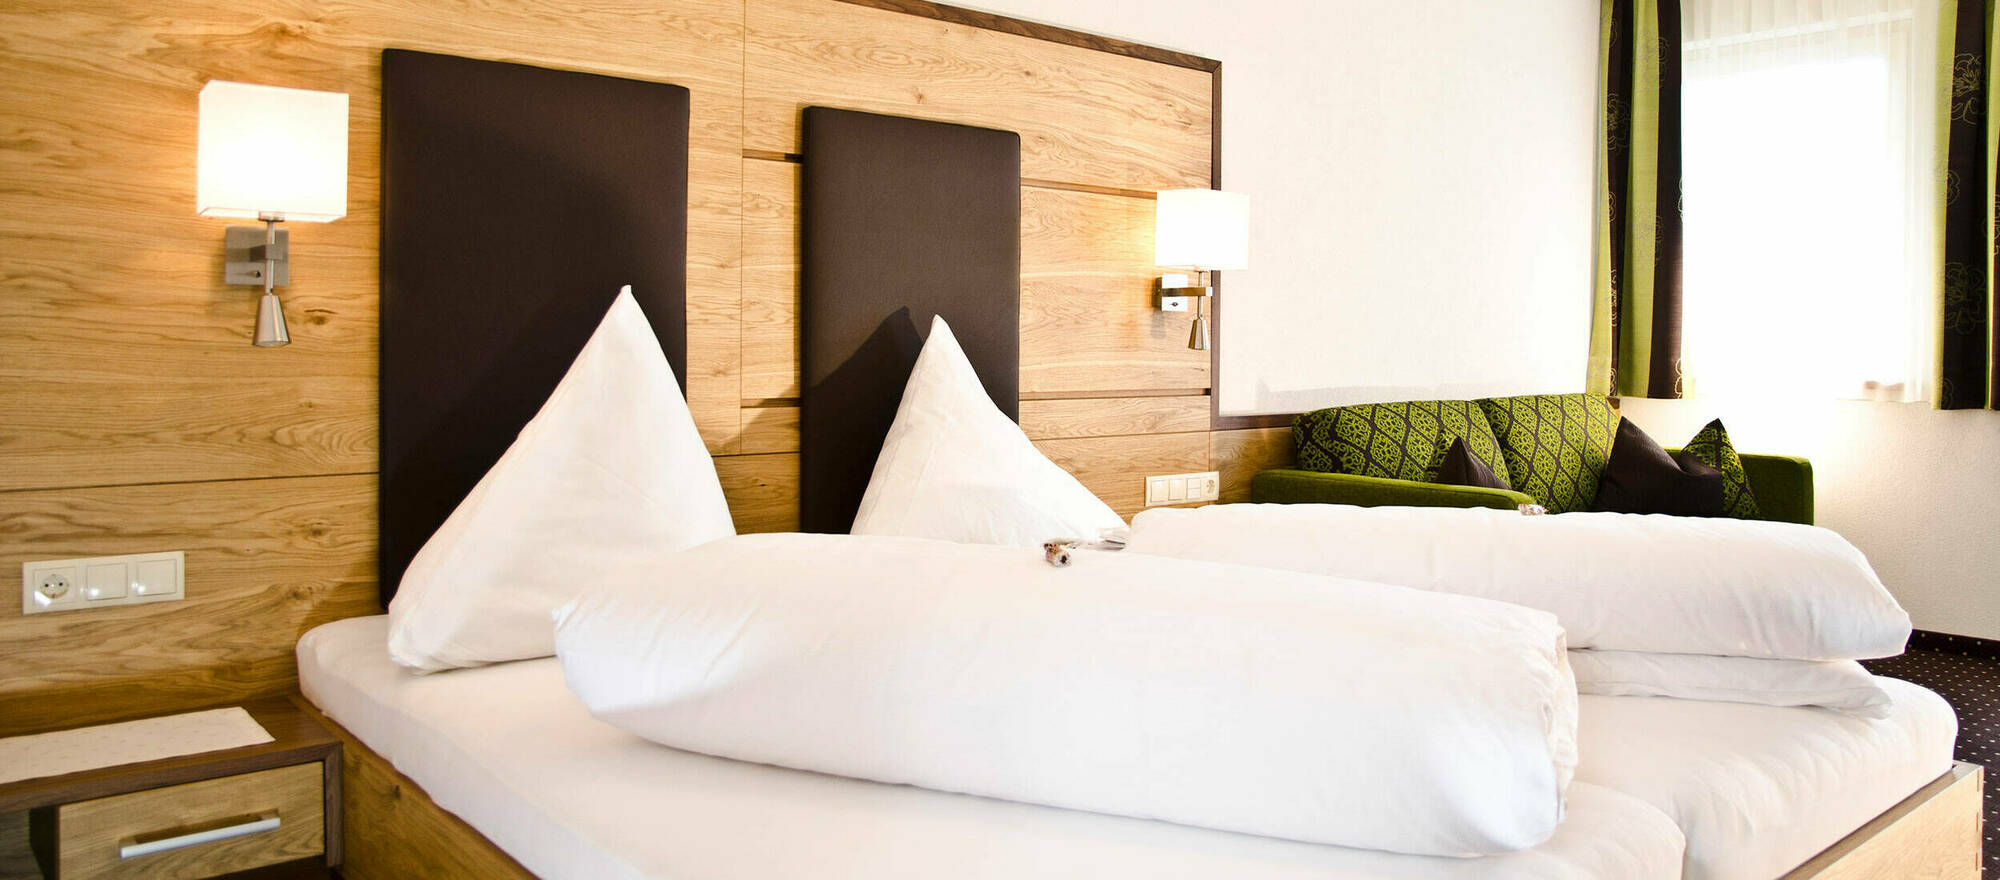 Rooms & Suite in the Hotel- Garni Arosa